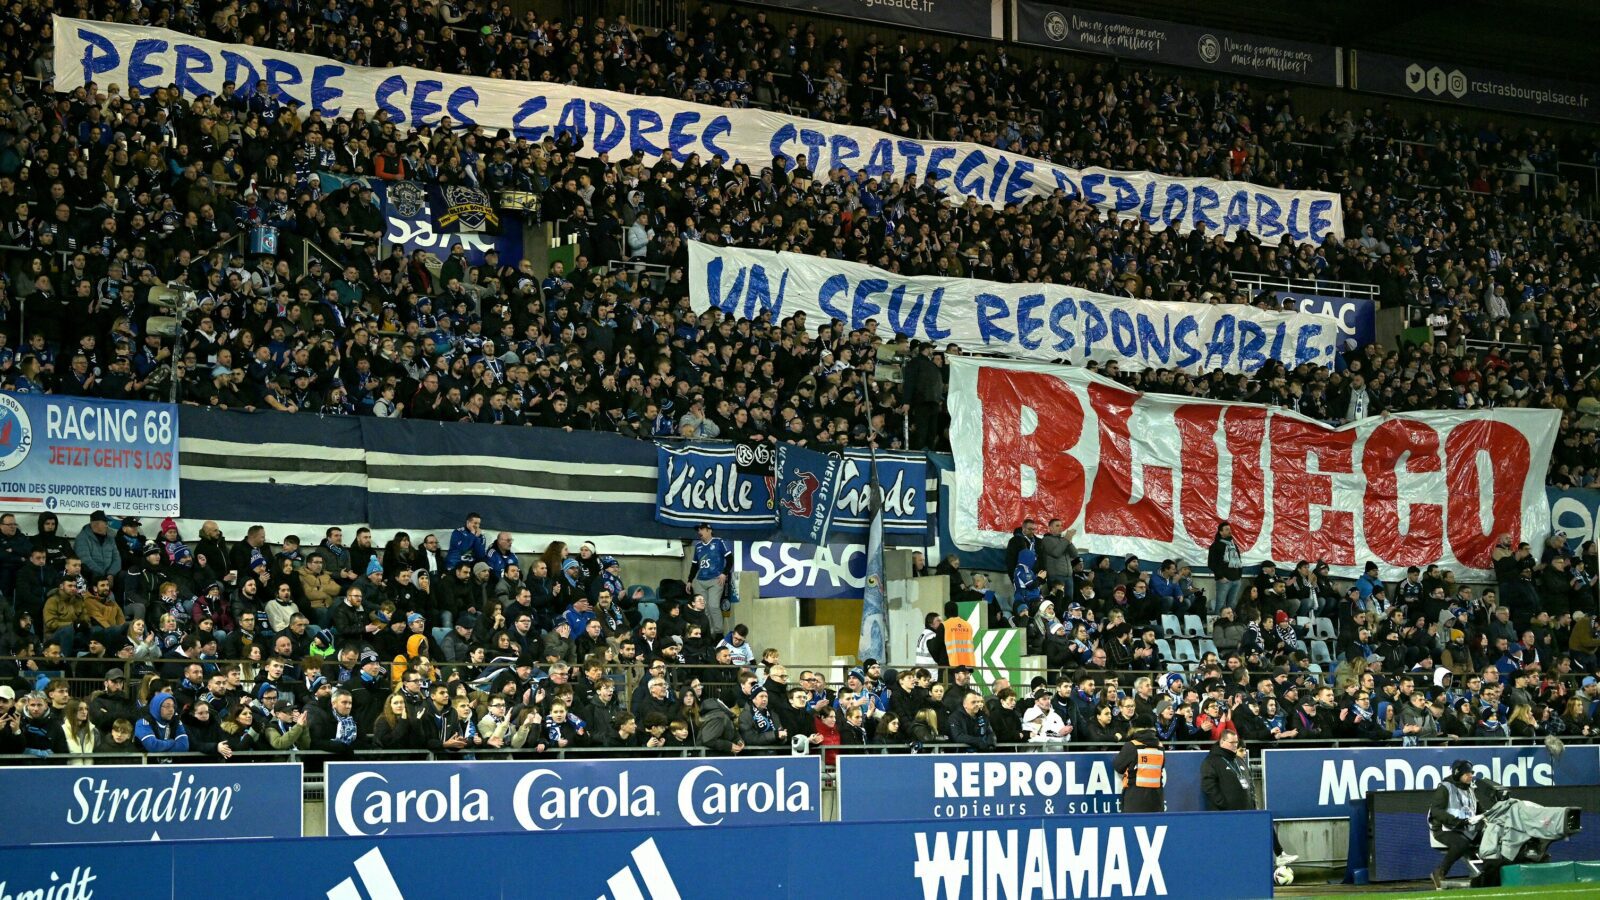 Les supporters de Strasbourg contre Blueco et la multipropriété